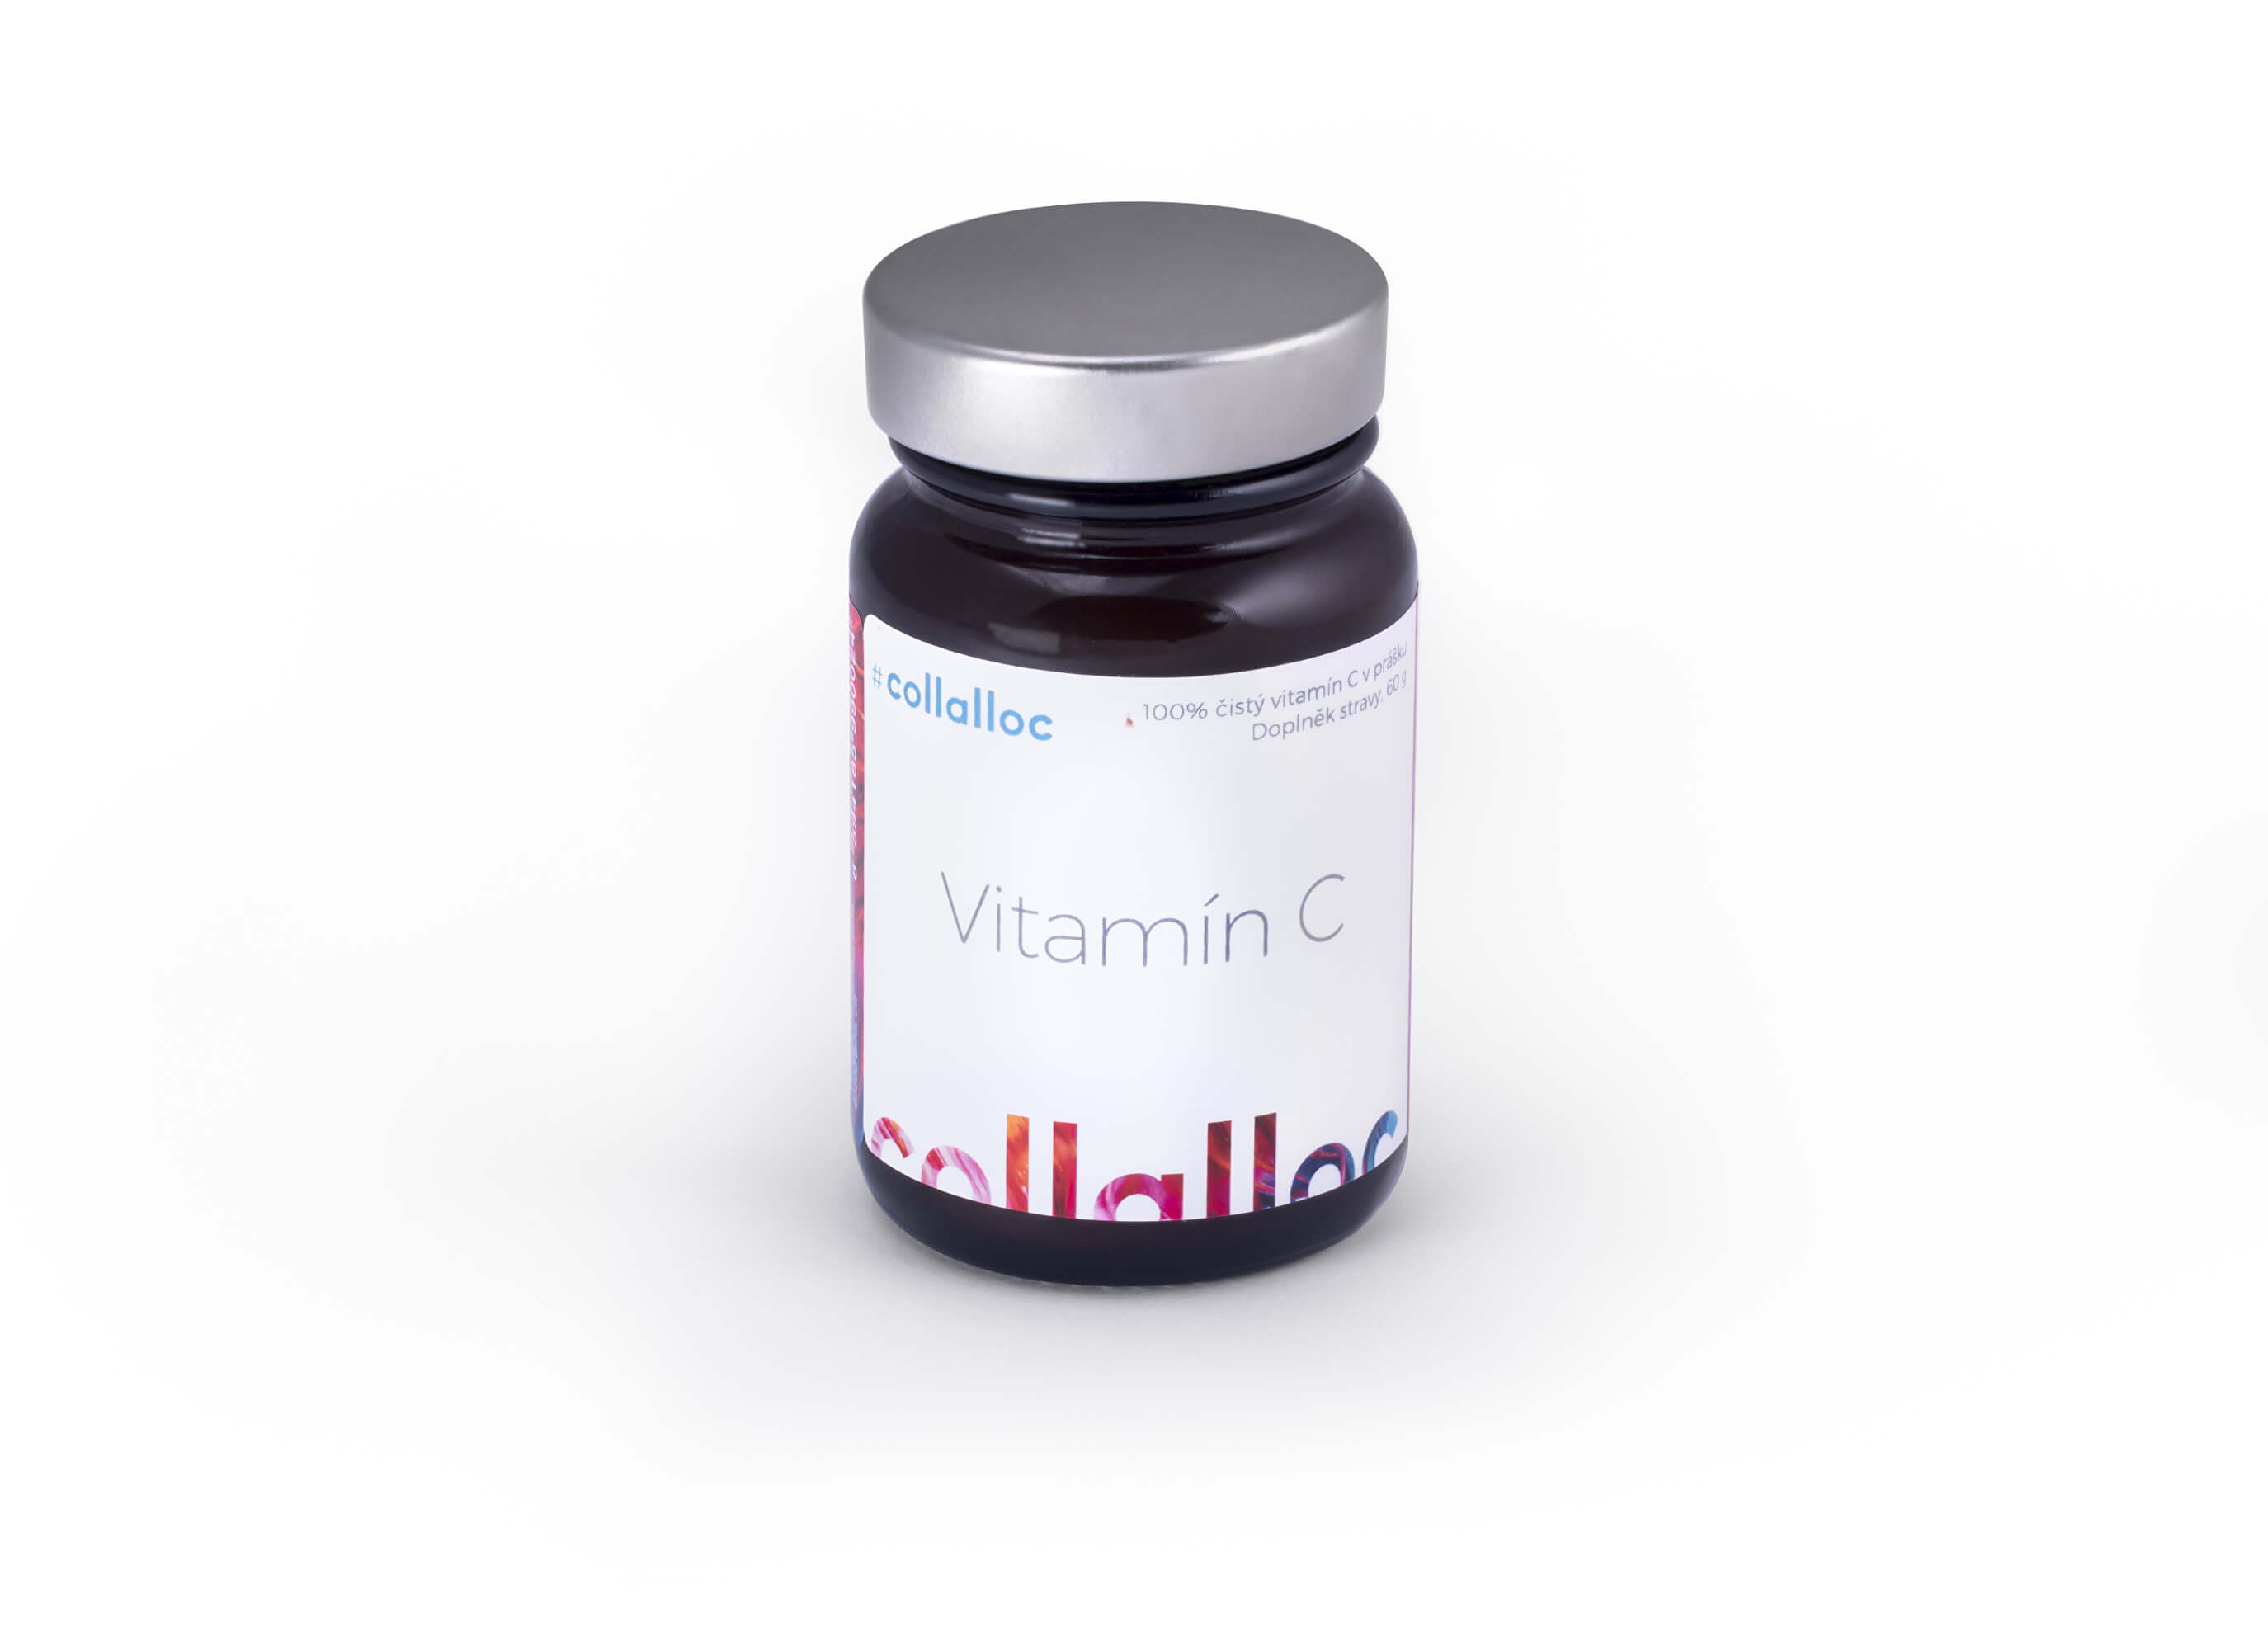 Zobrazit detail výrobku Collalloc Collalloc Vitamin C 60 g + 2 měsíce na vrácení zboží